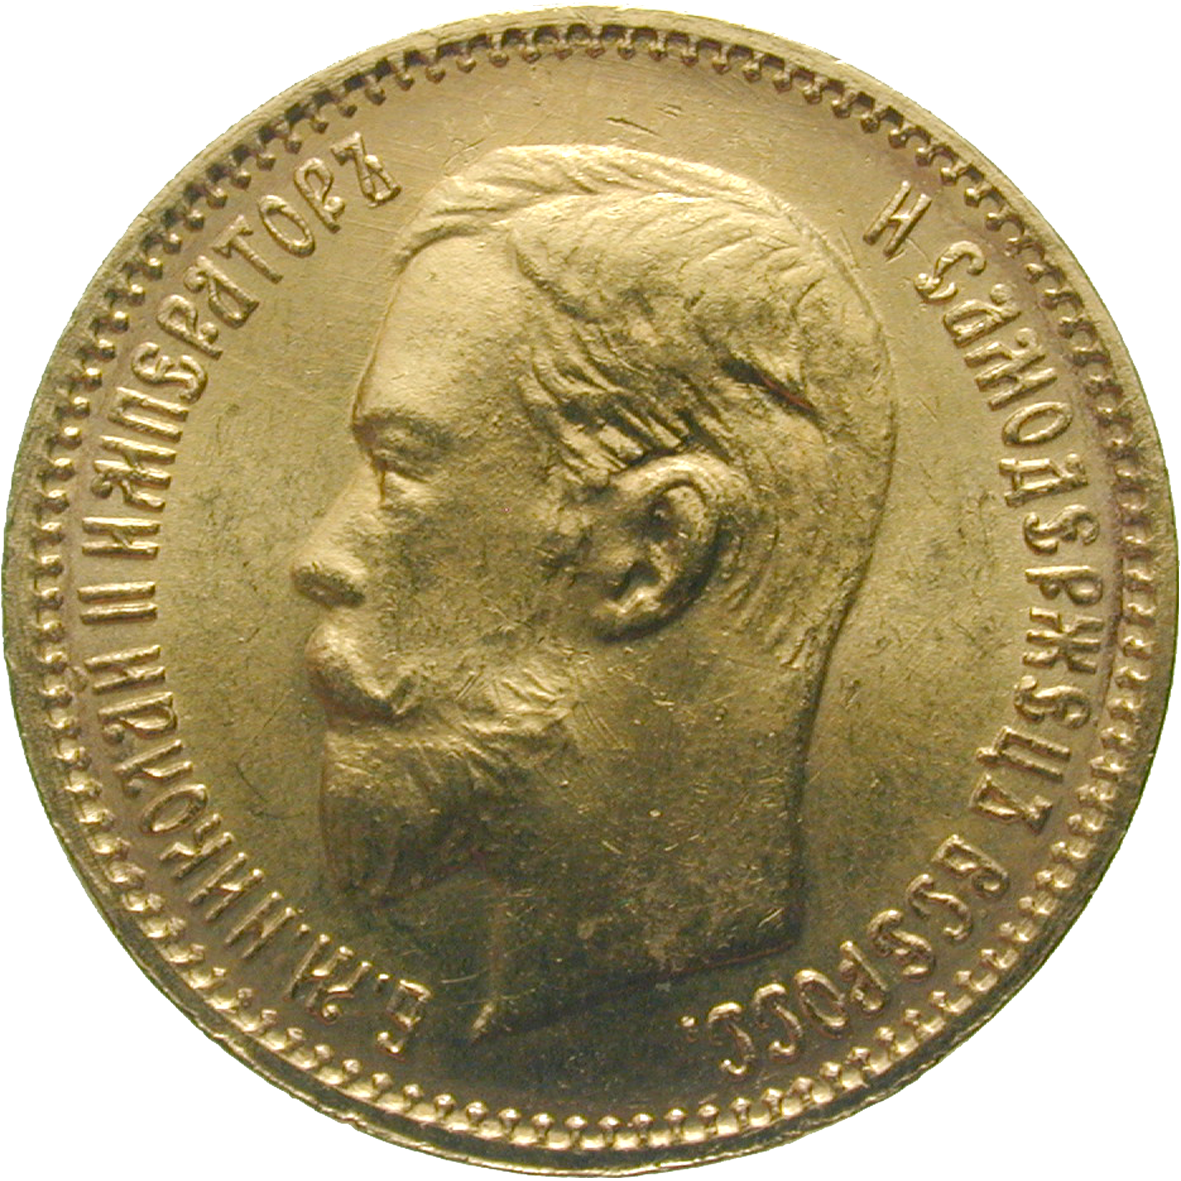 Russian Empire, Nicholas II, 5 Rubles 1903 (obverse)